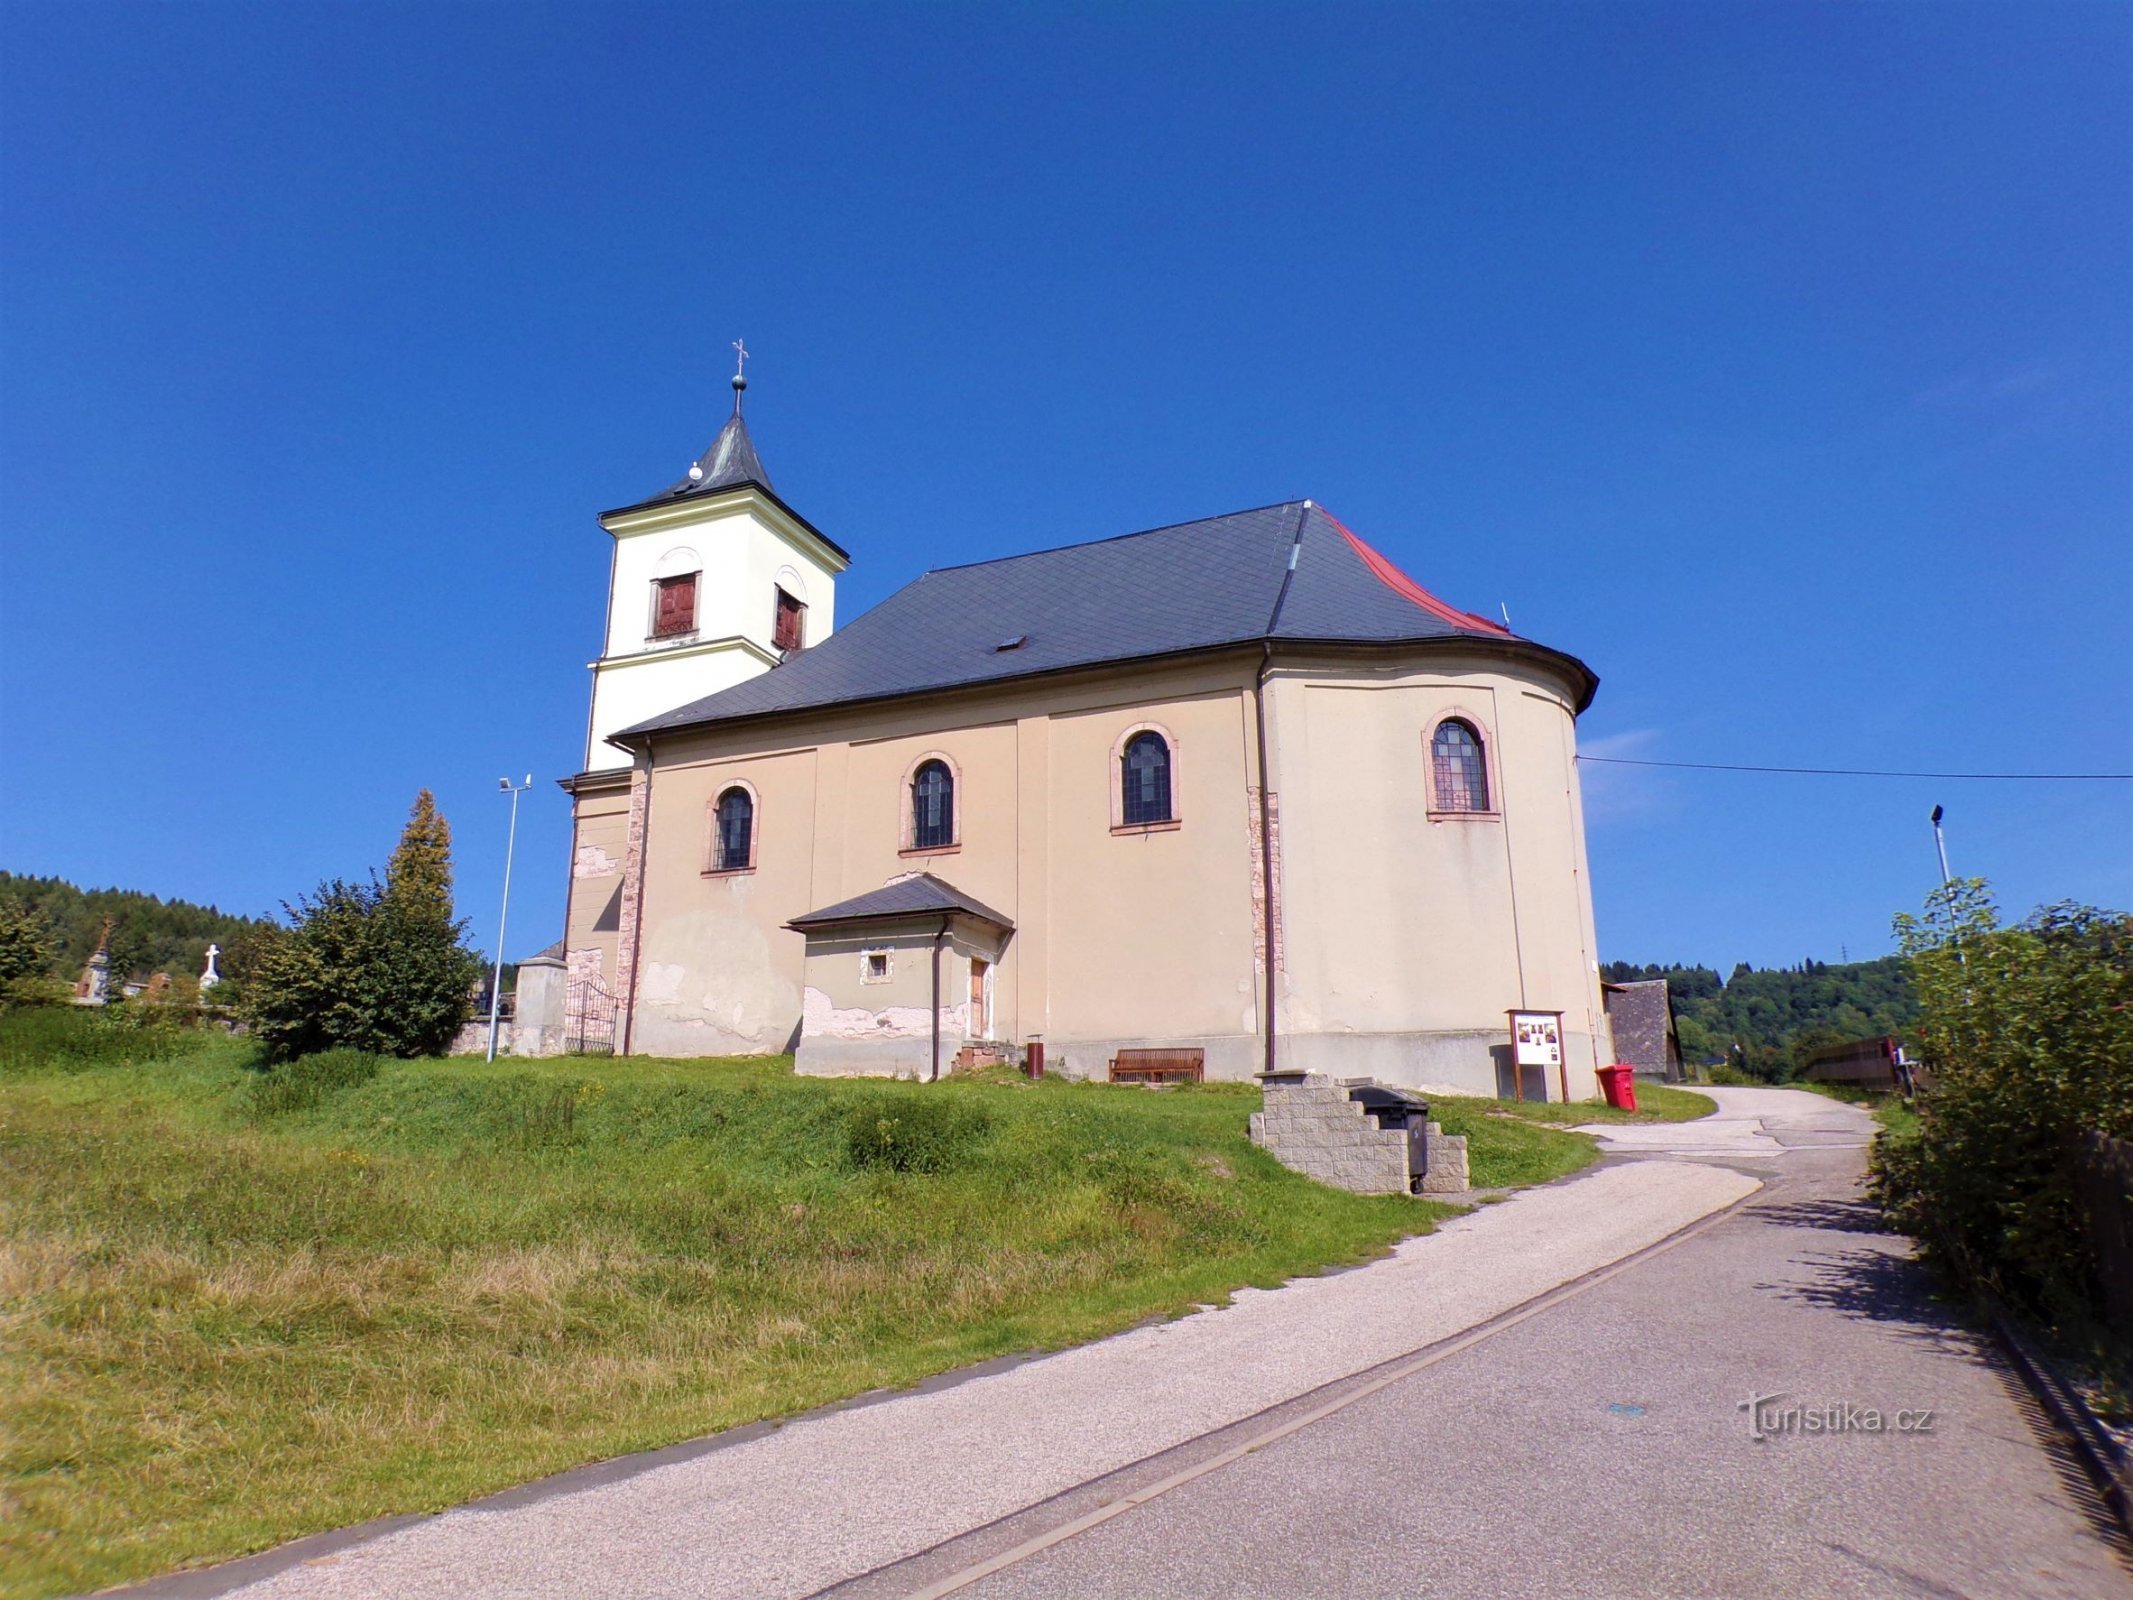 Nhà thờ St. John the Baptist (Markoušovice, 6.9.2021/XNUMX/XNUMX)